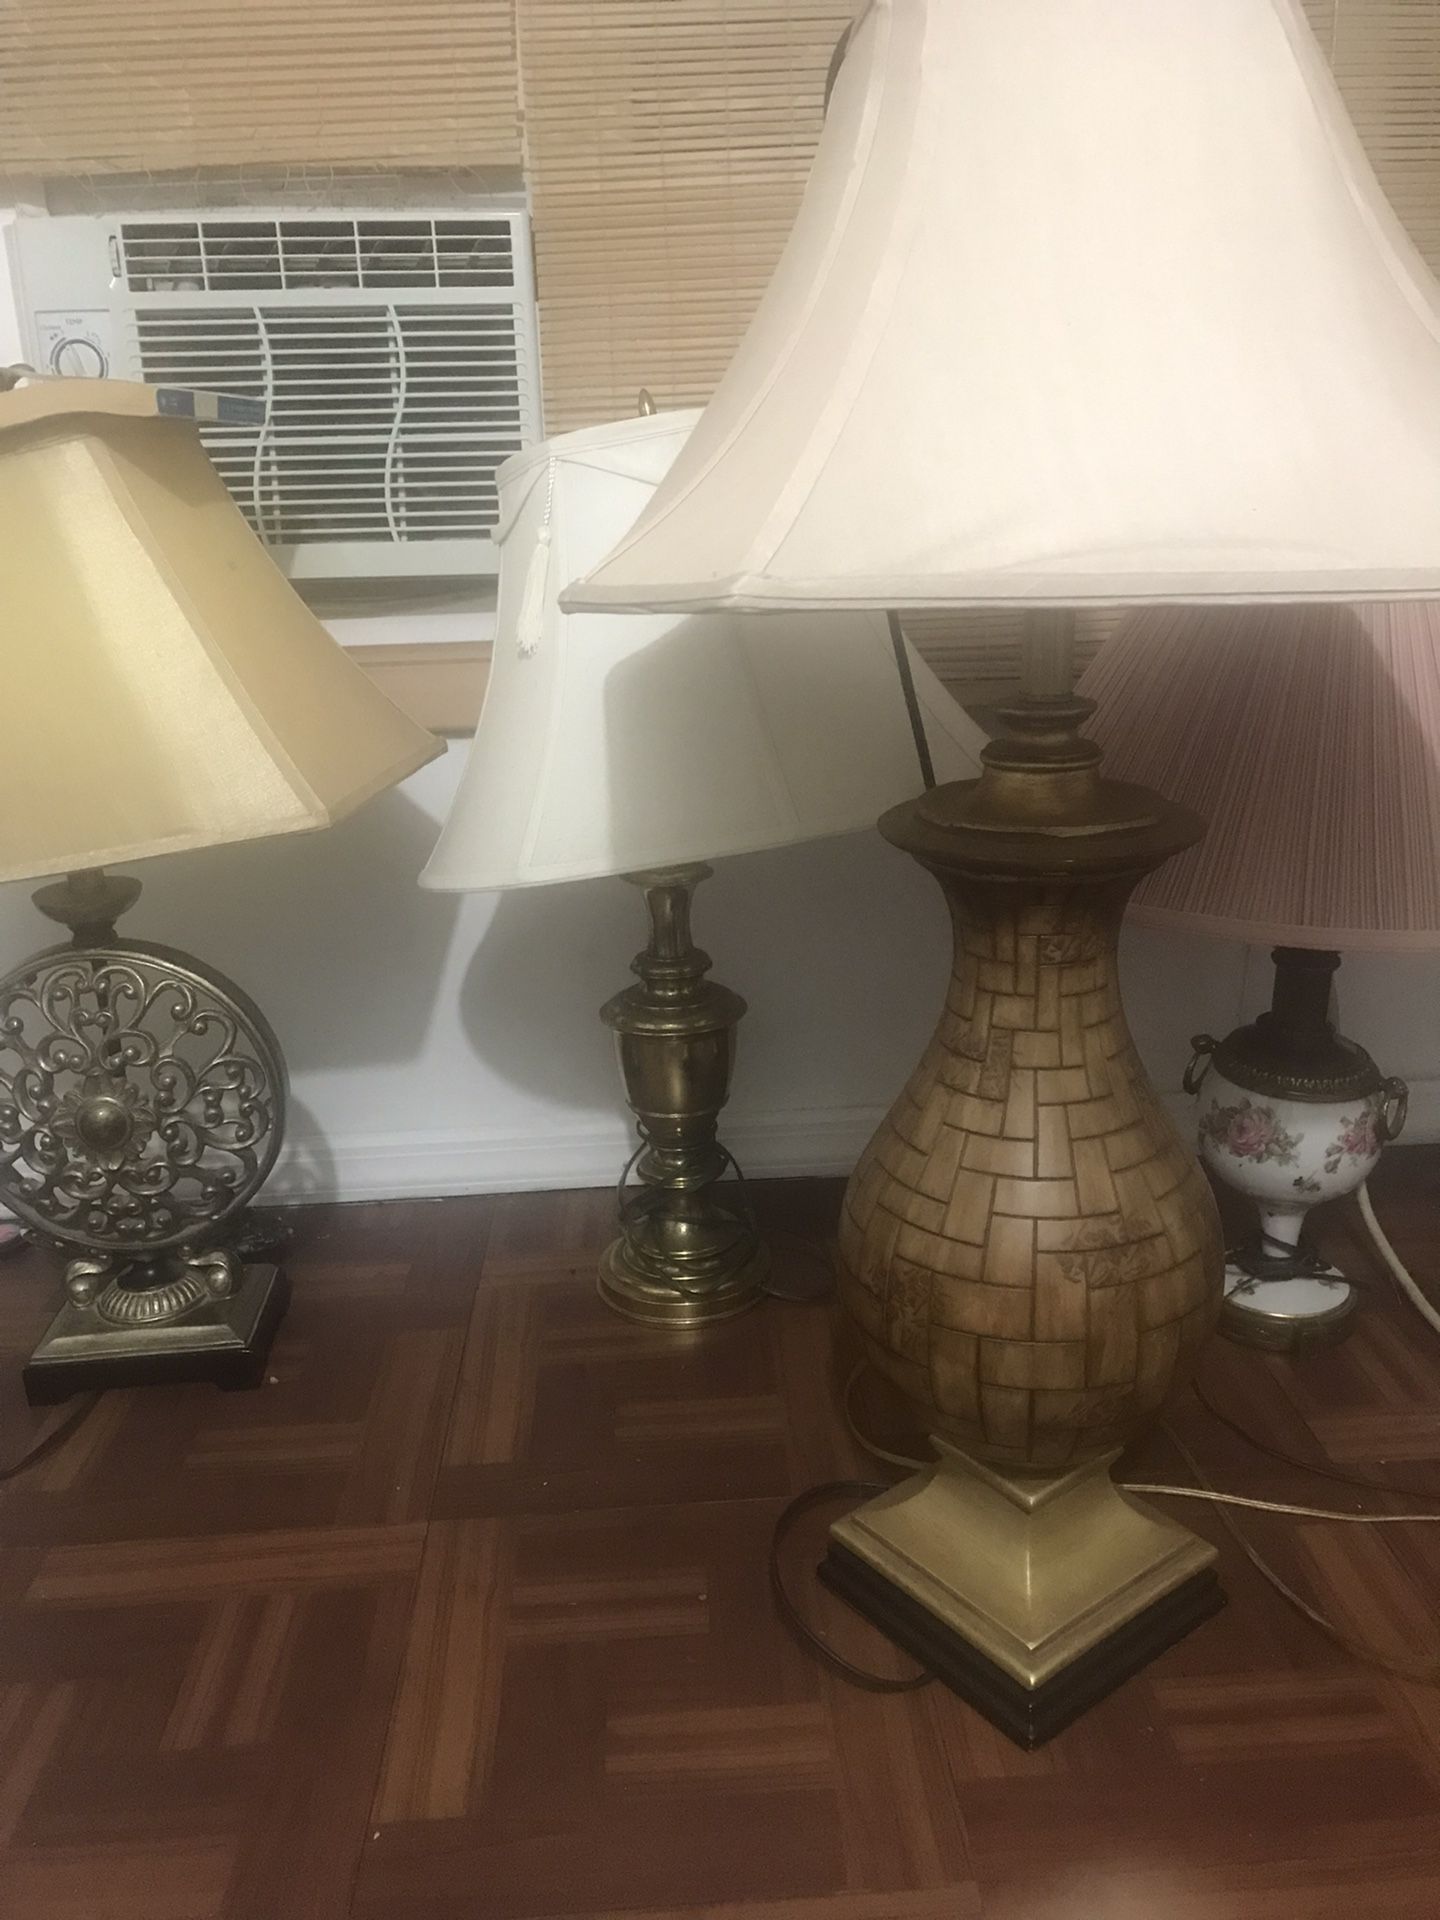 Vintage Lamps 